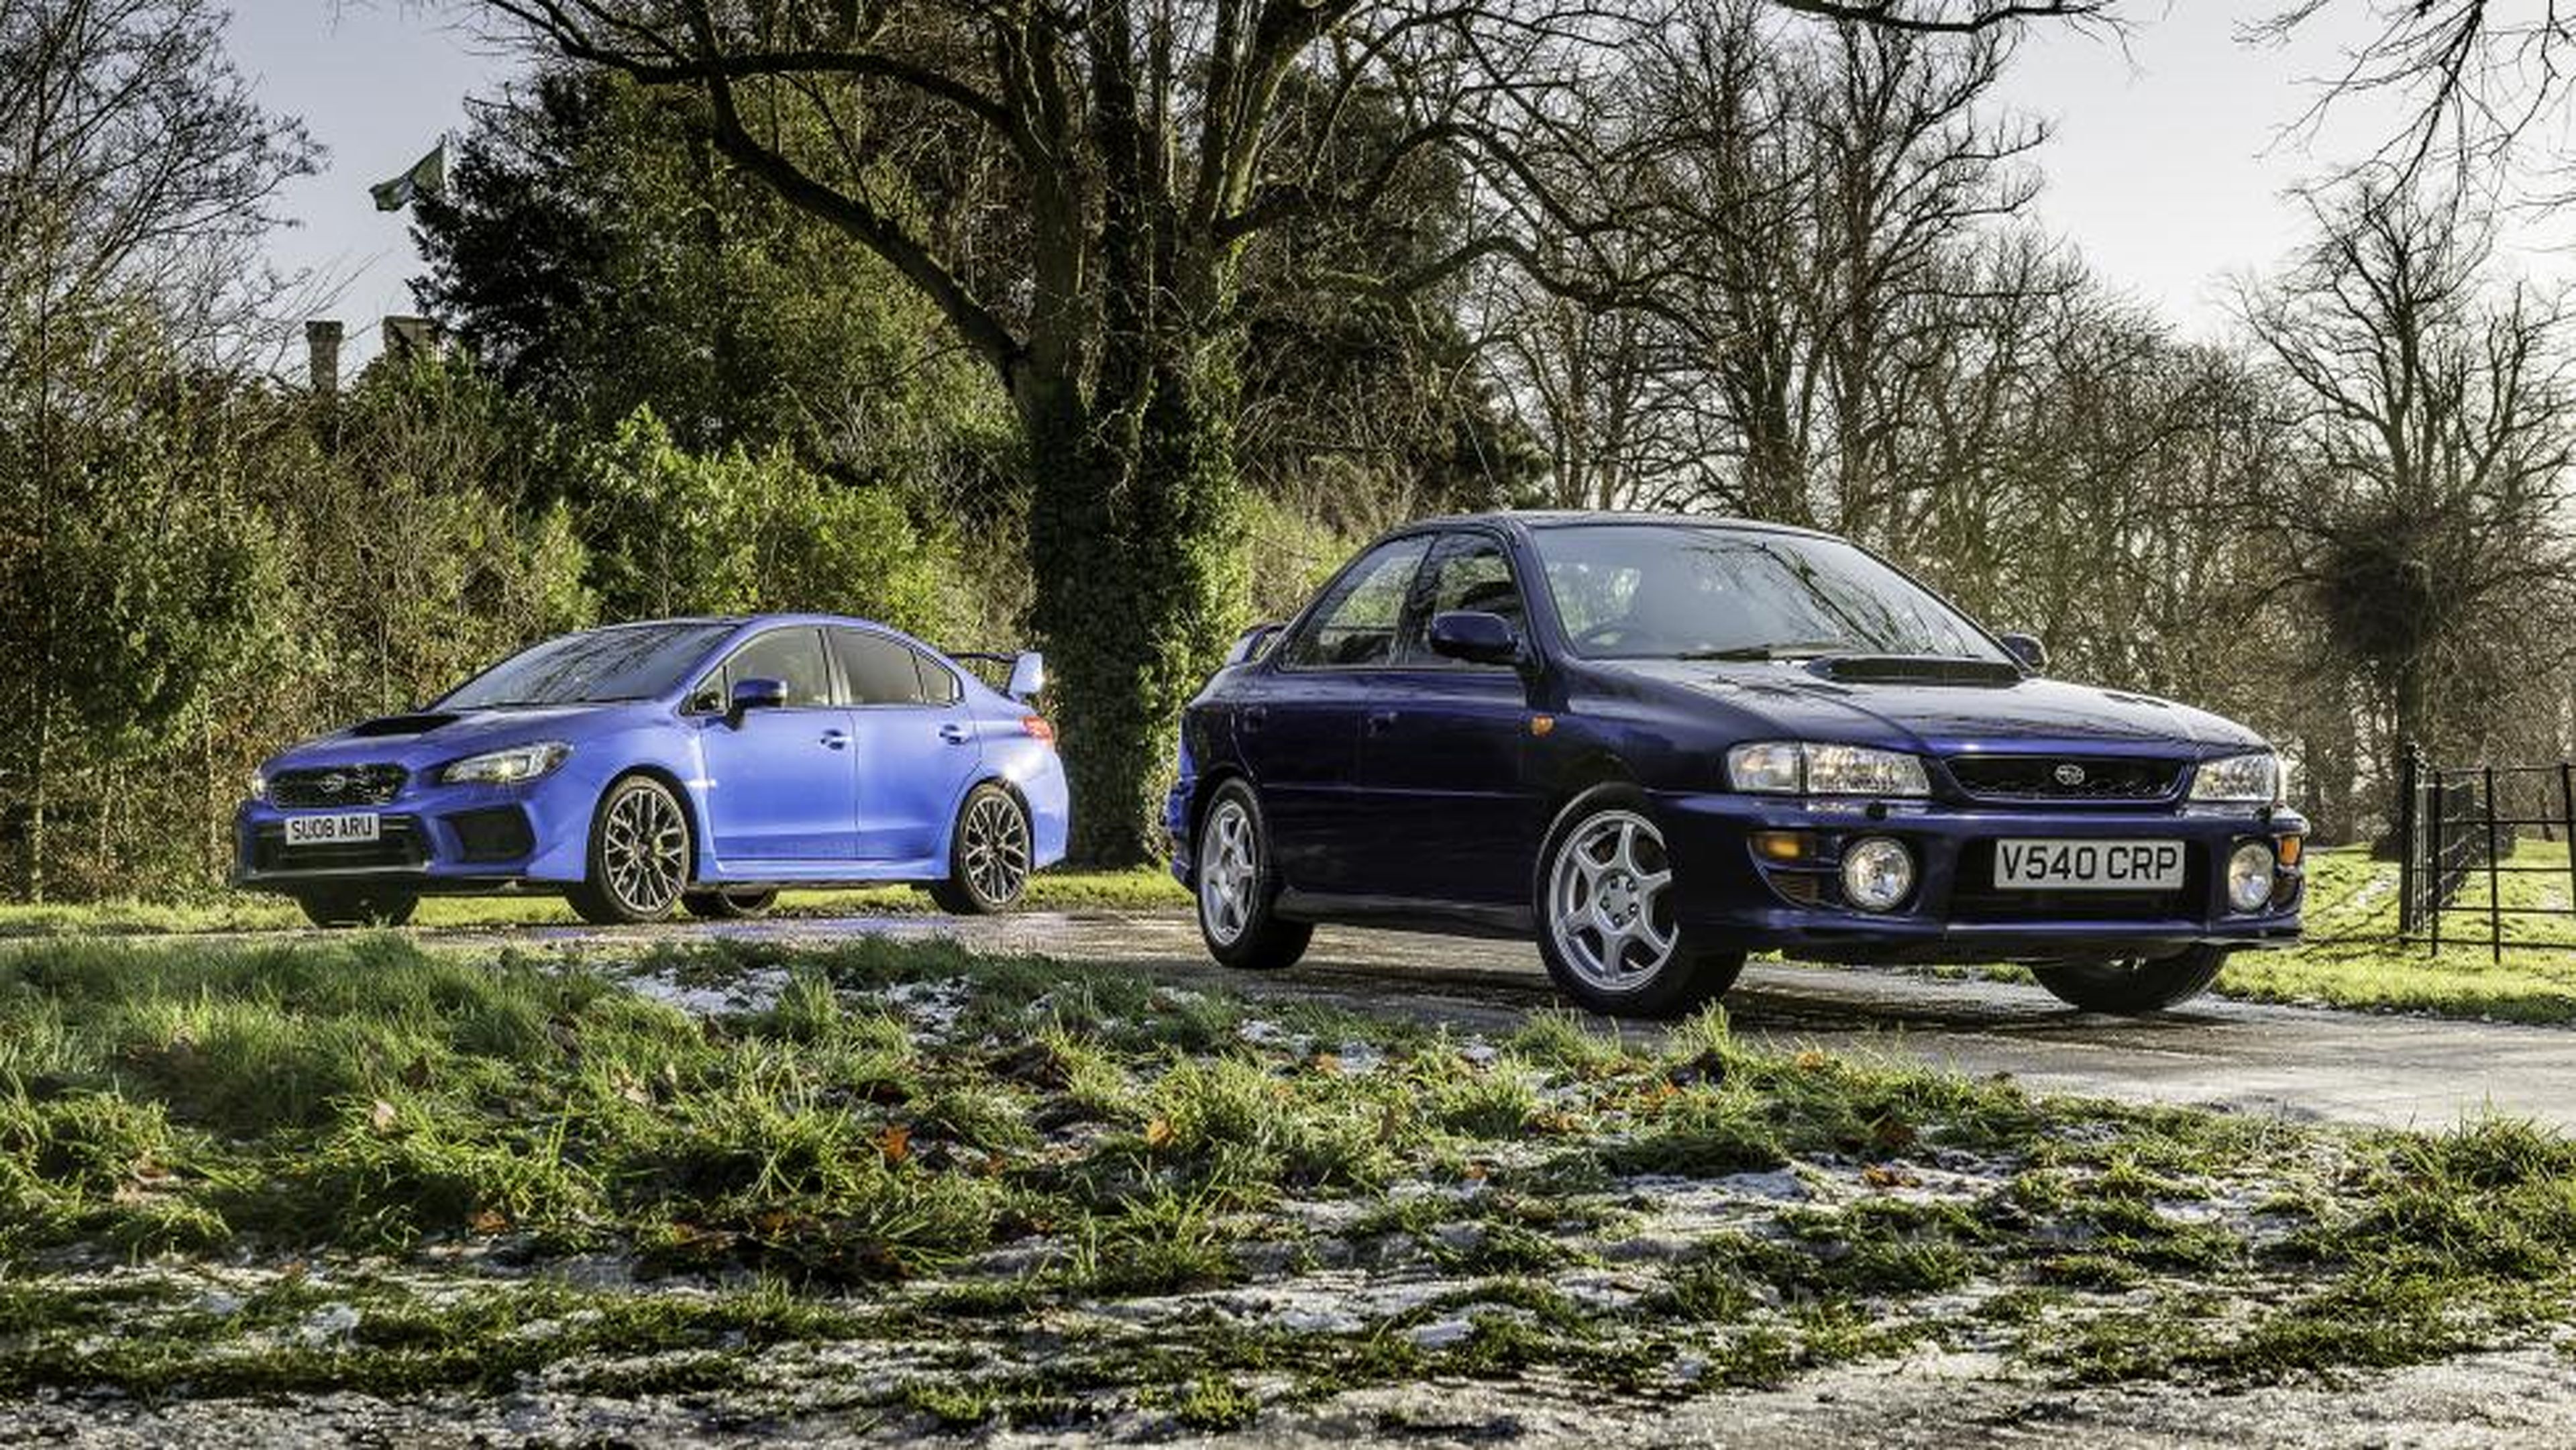 Comparativa Subaru WRX STI vs Impreza Turbo. Exteriores